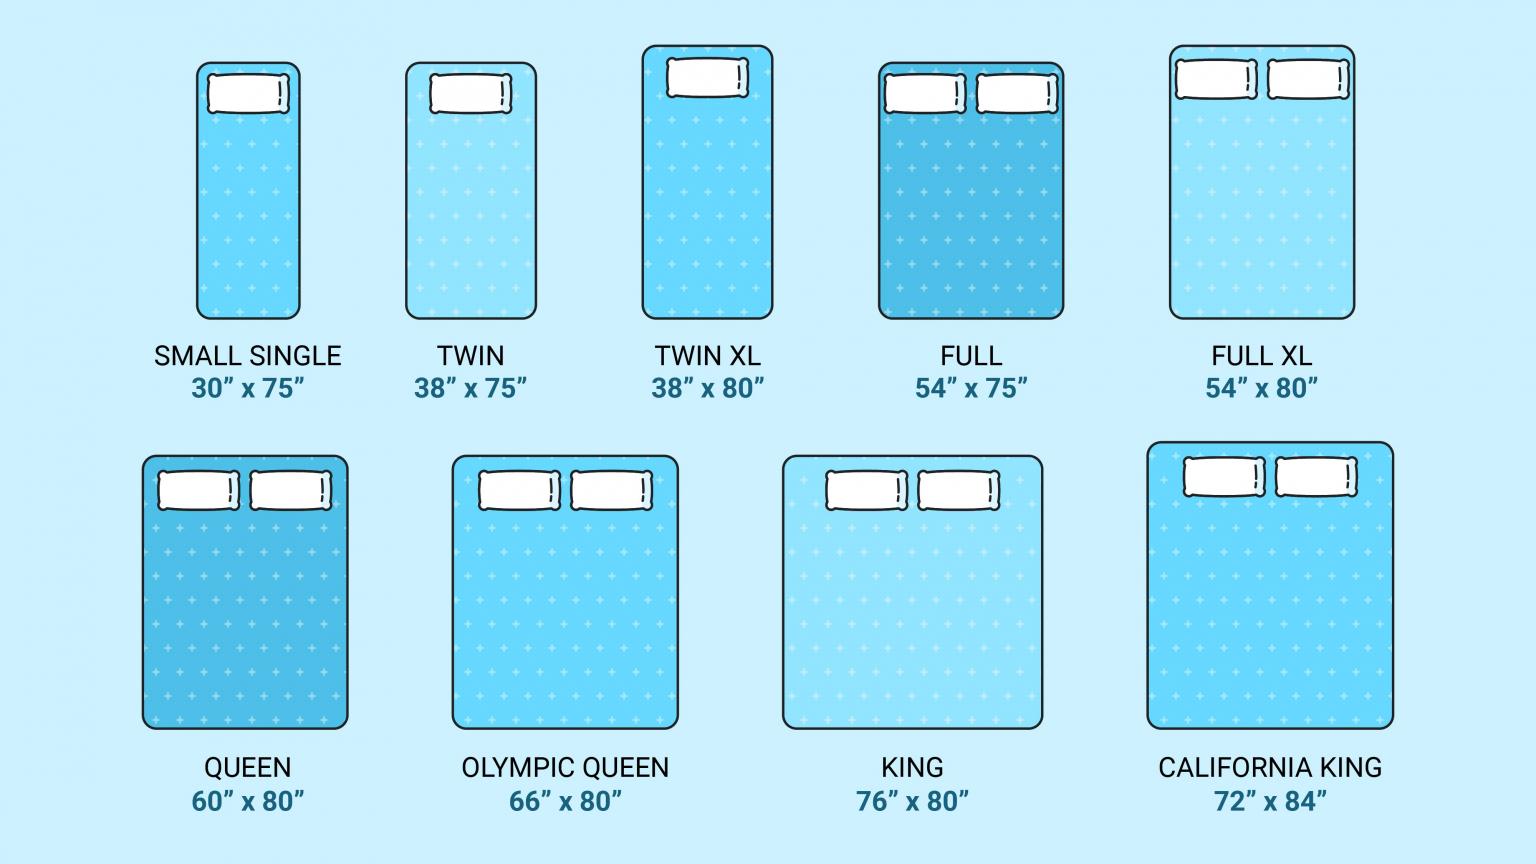 queen size mattress topper dimensions